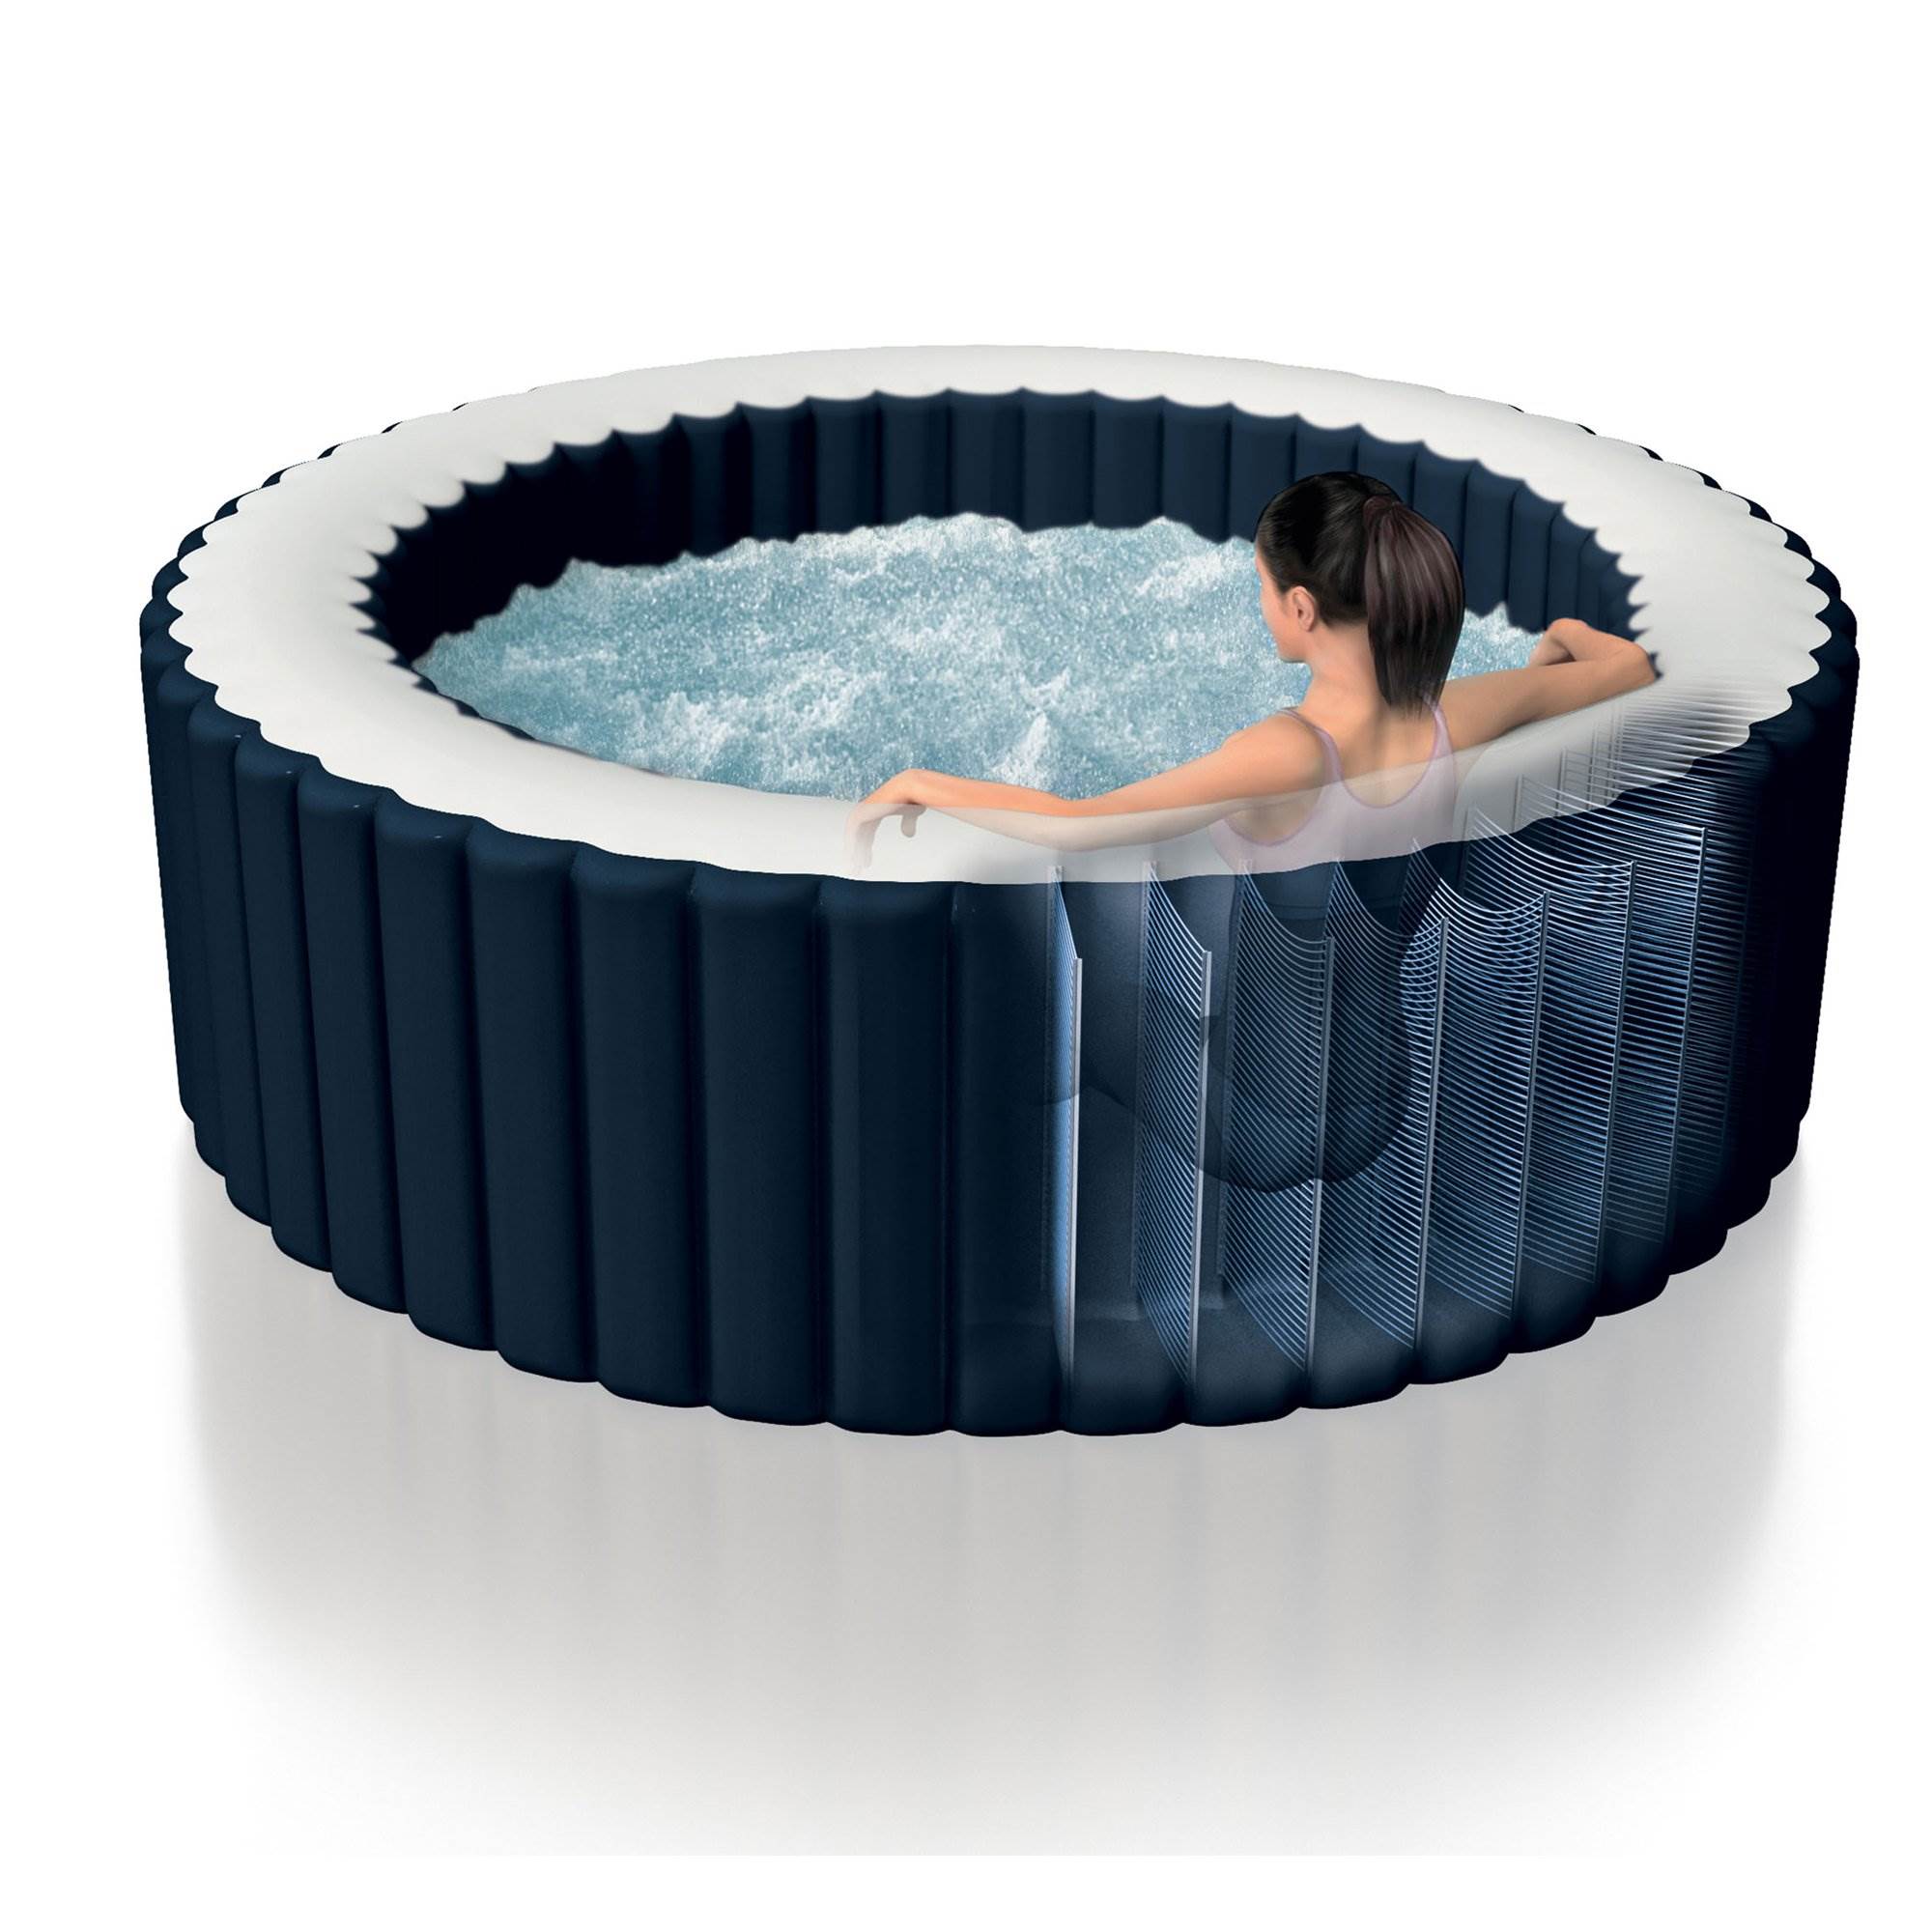 Intex 28405e Pure Spa 4 Person Inflatable Hot Tub W